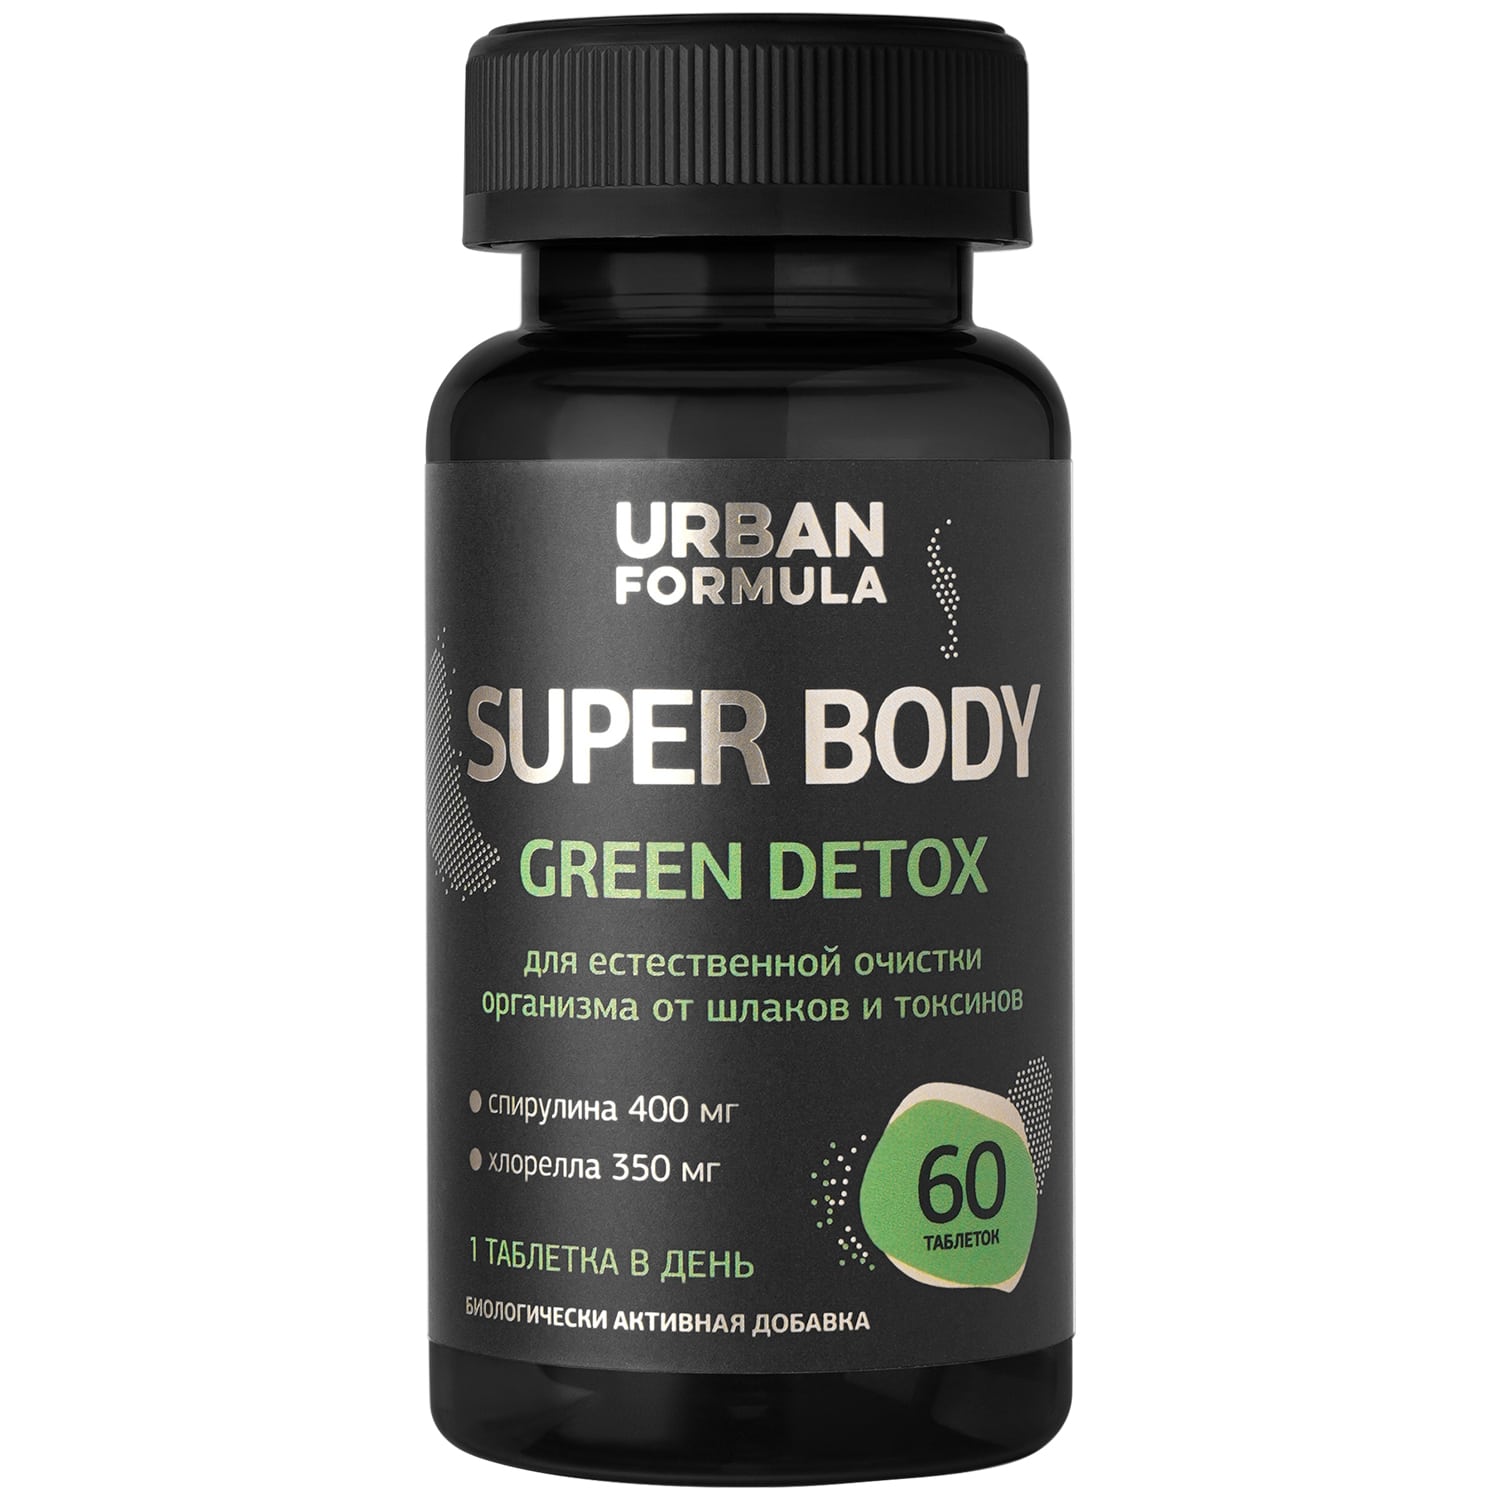 Urban Formula Комплекс на растительной основе Green Detox, 60 таблеток (Urban Formula, Super Body) urban formula super body green detox